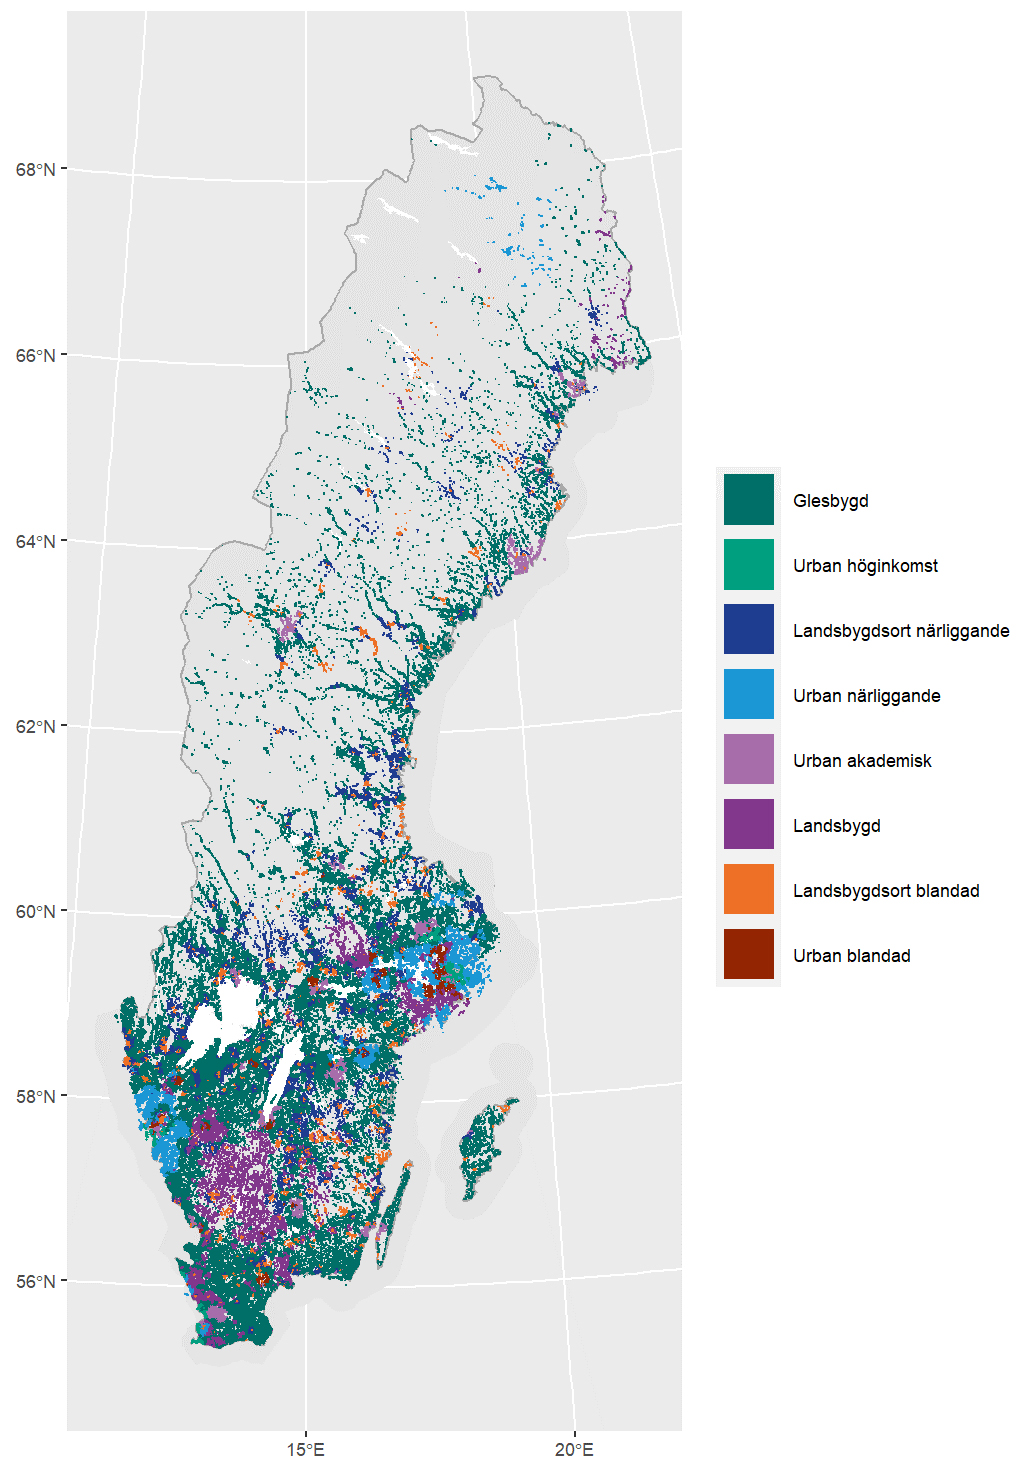 Figur 2 visar en karta över Sverige samt fördelningen av olika områdestyper i Sverige. 